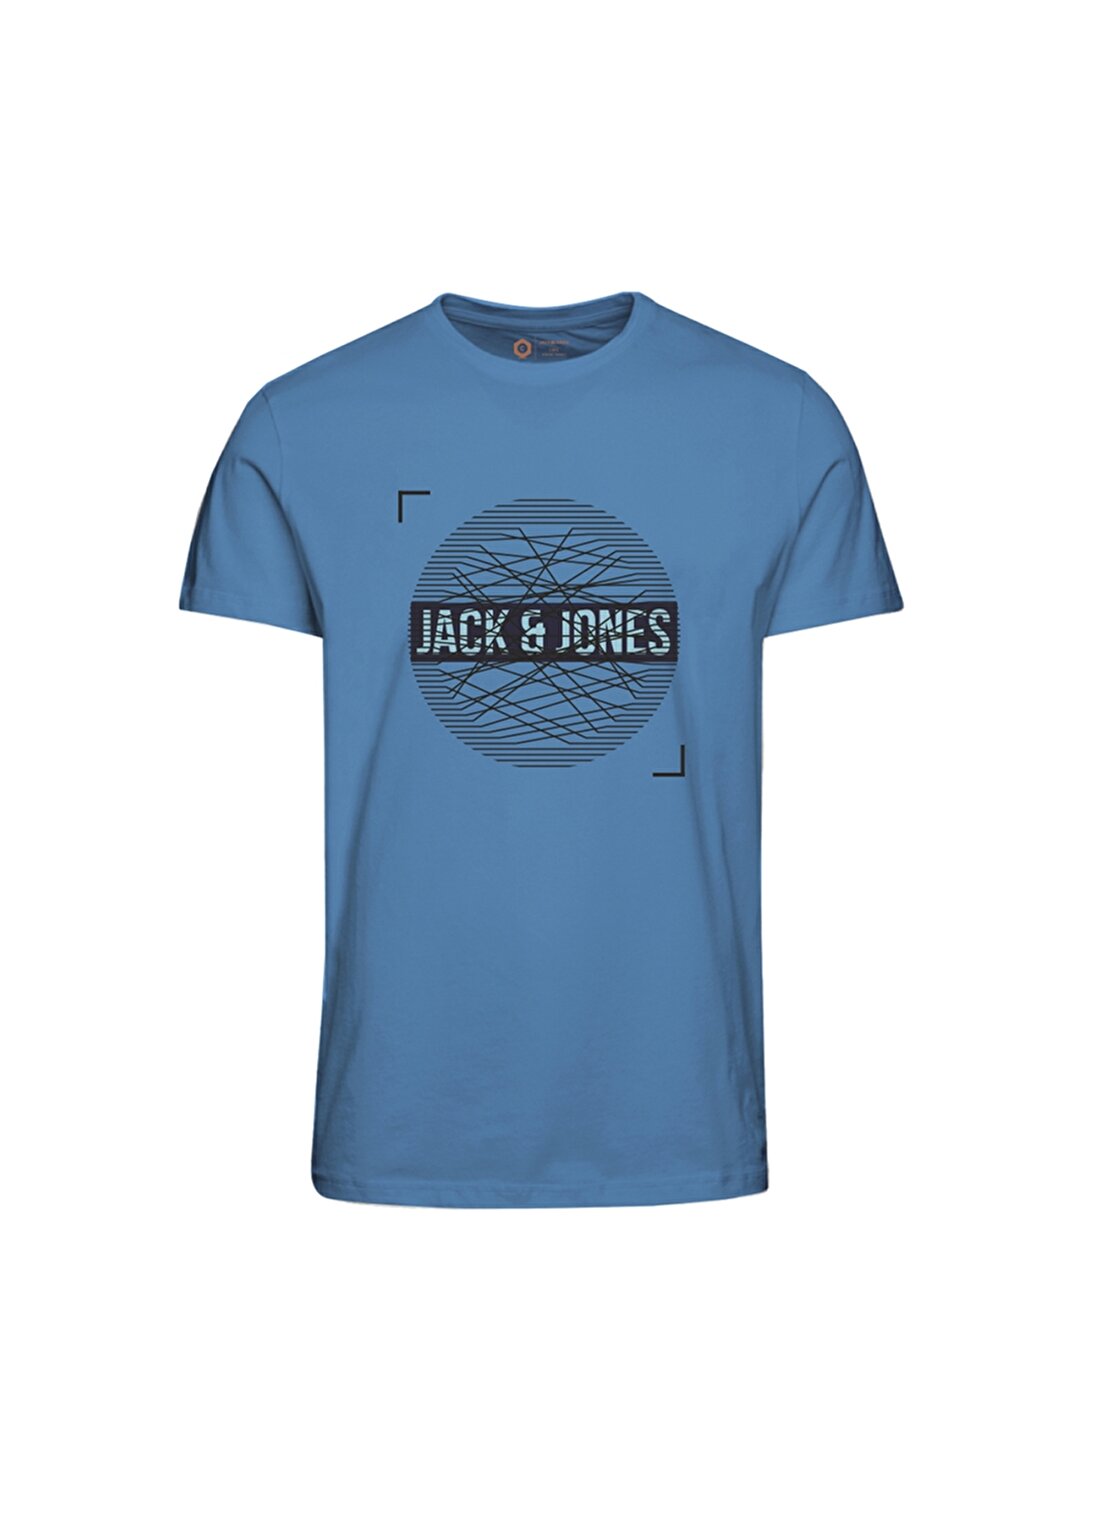 Jack & Jones Booster T-Shirt